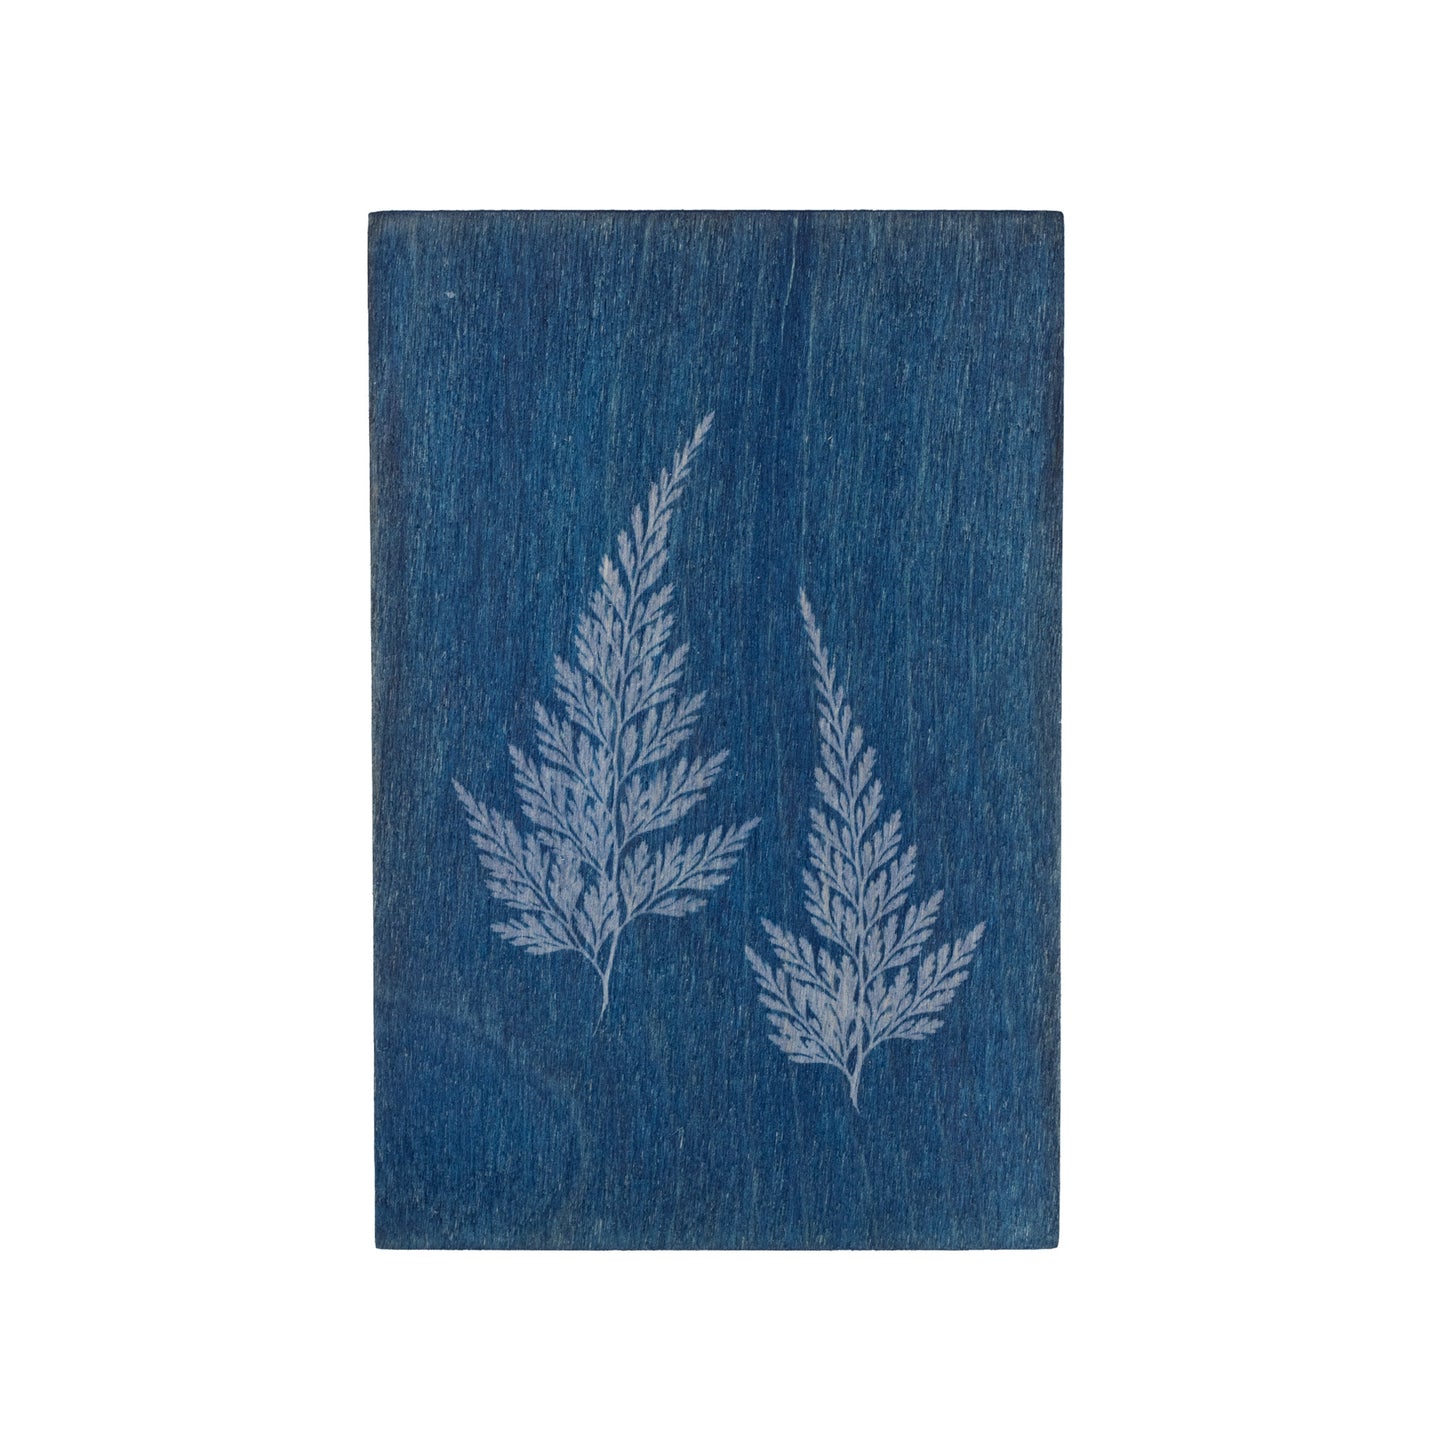 Wooden cyanotype postcard with a fern on it